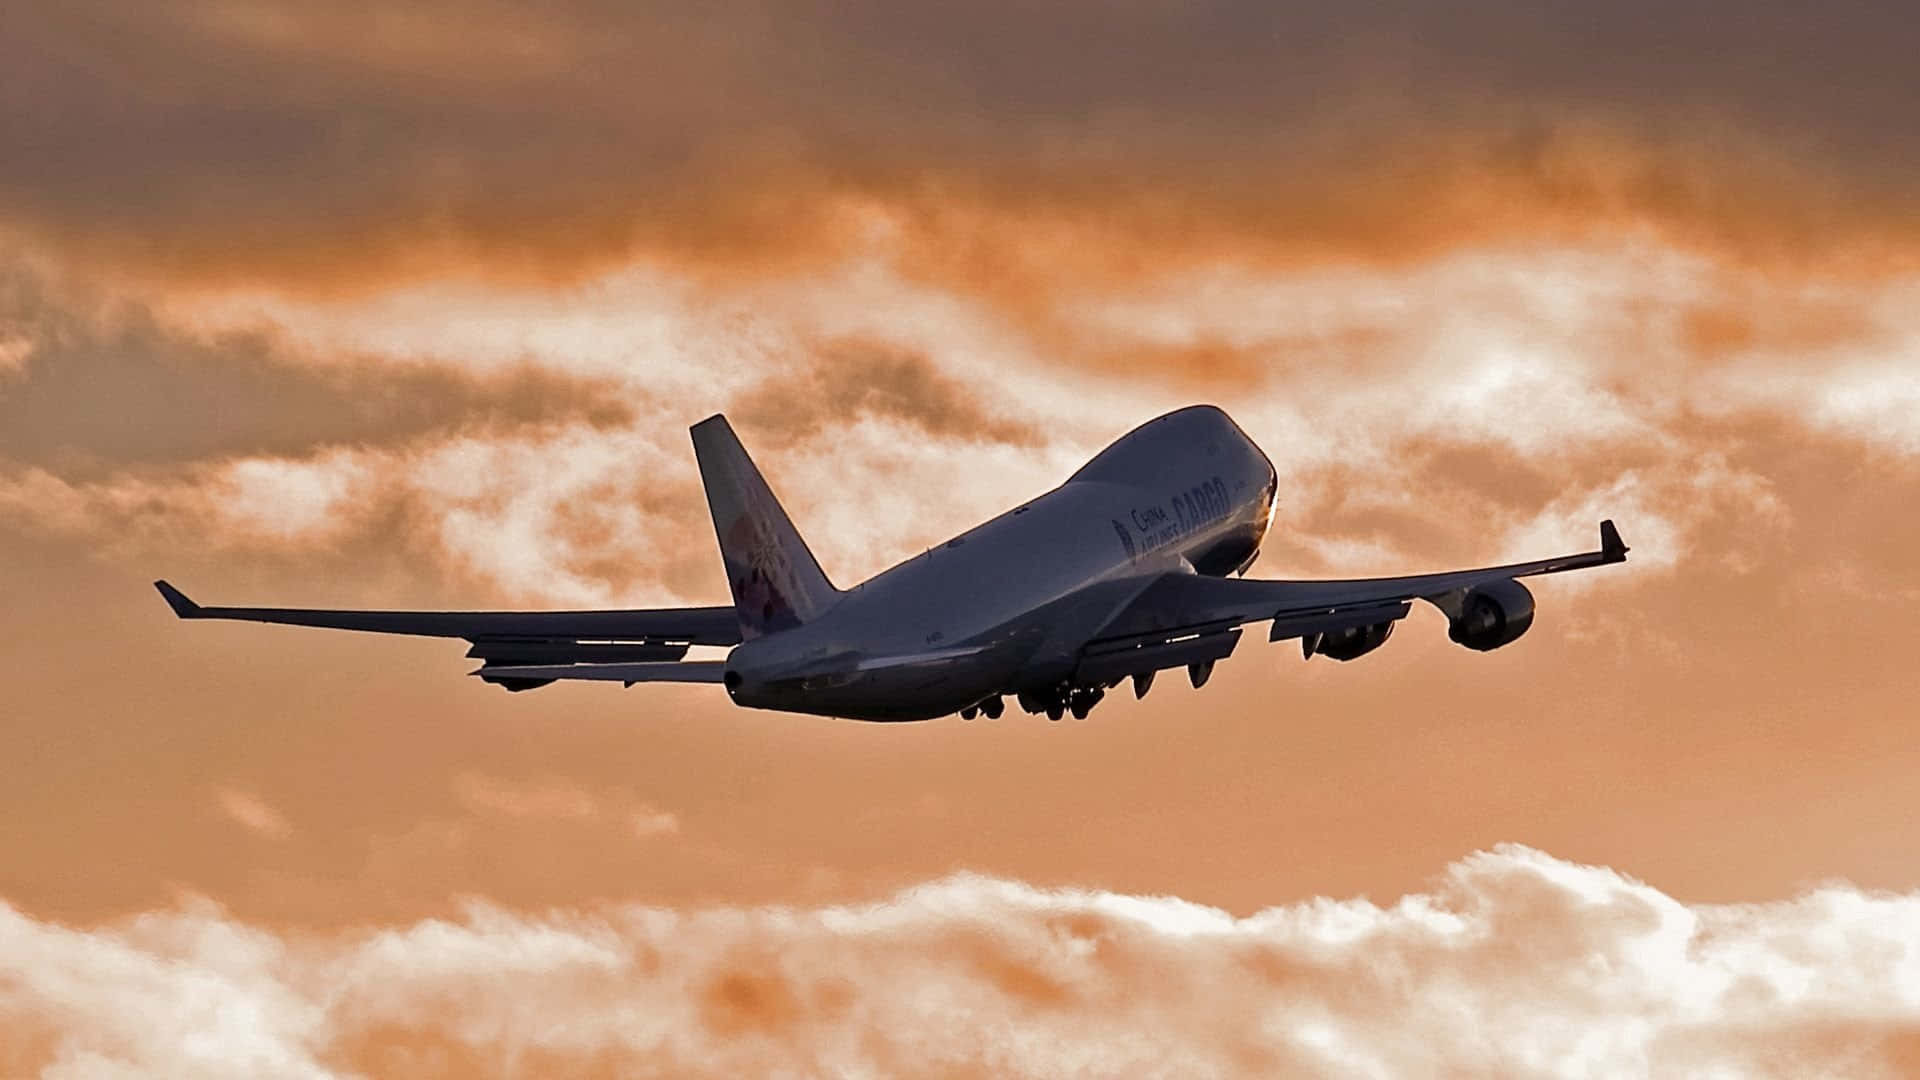 Klättraombord På En Klassisk: En Boeing 747-flygplan I Flygning. Wallpaper